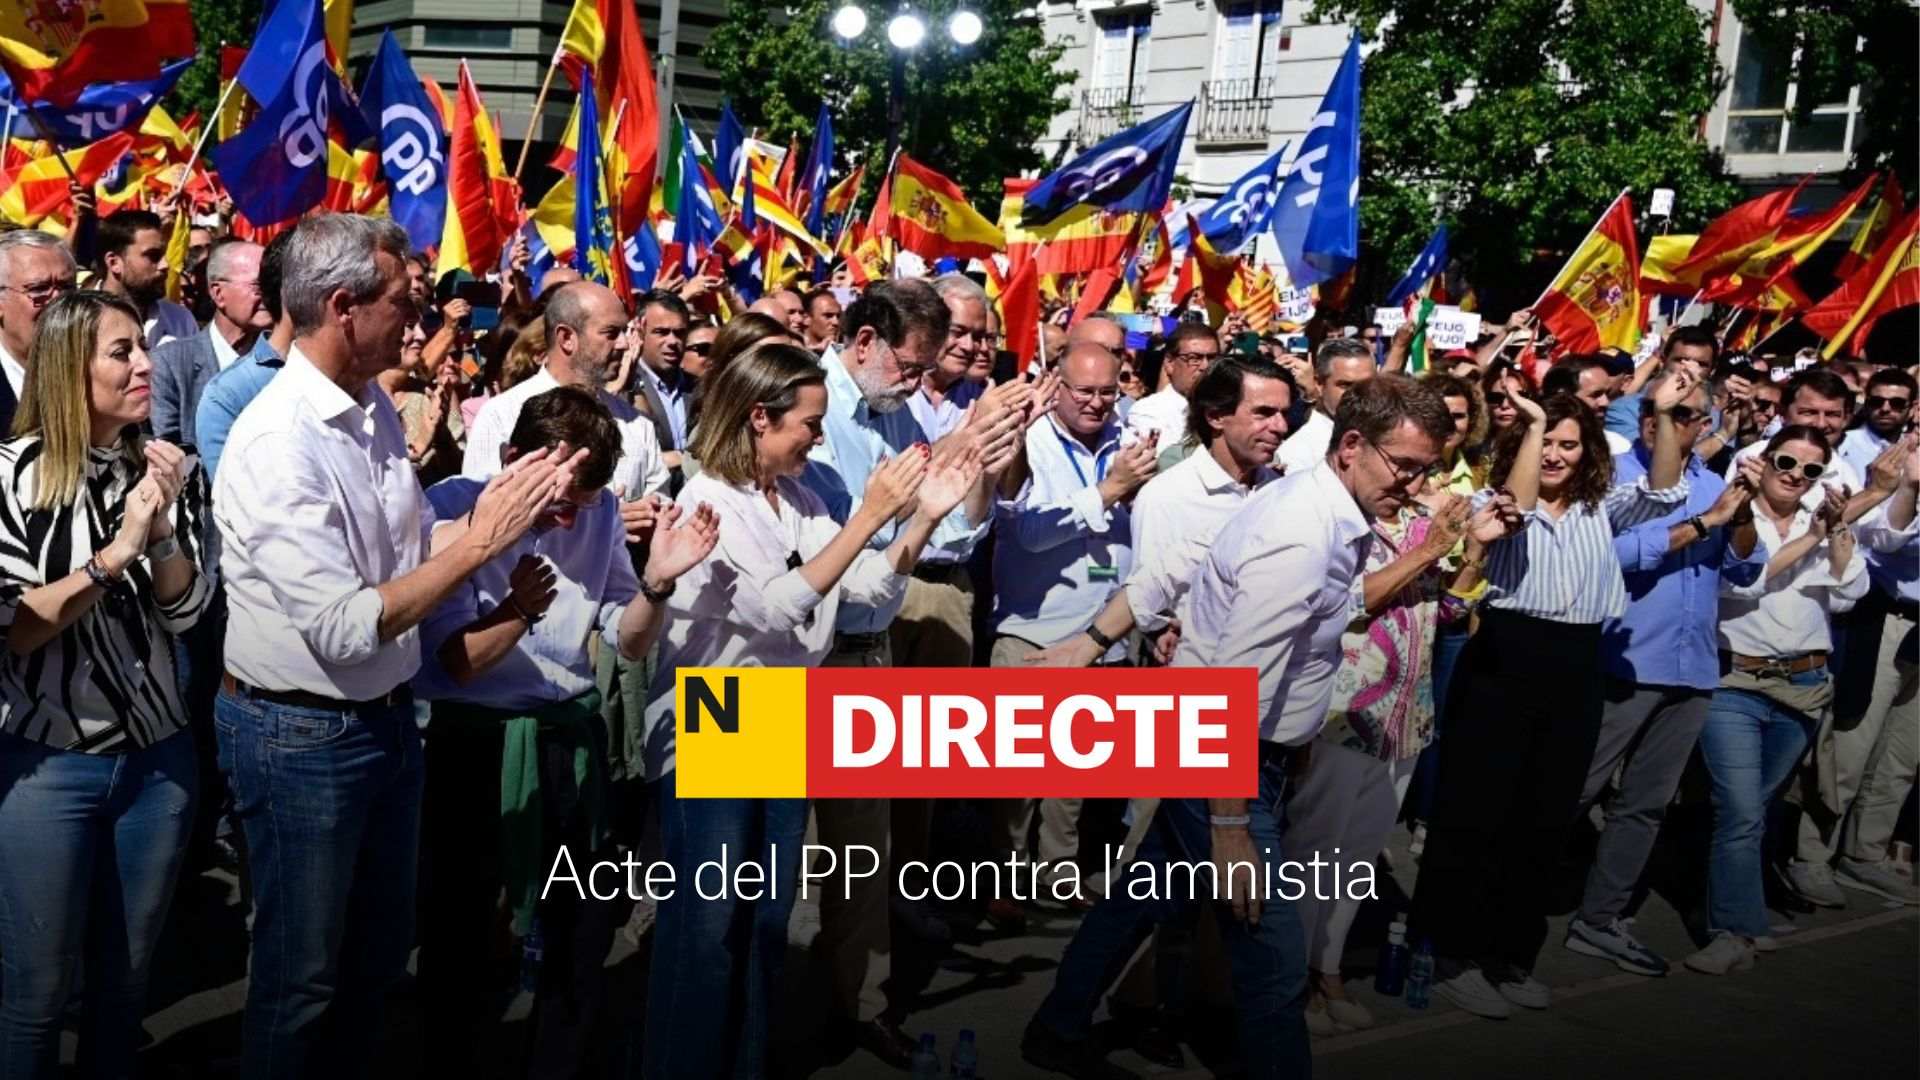 Acte del PP a Madrid contra l’amnistia, DIRECTE | Última hora, discursos i totes les reaccions